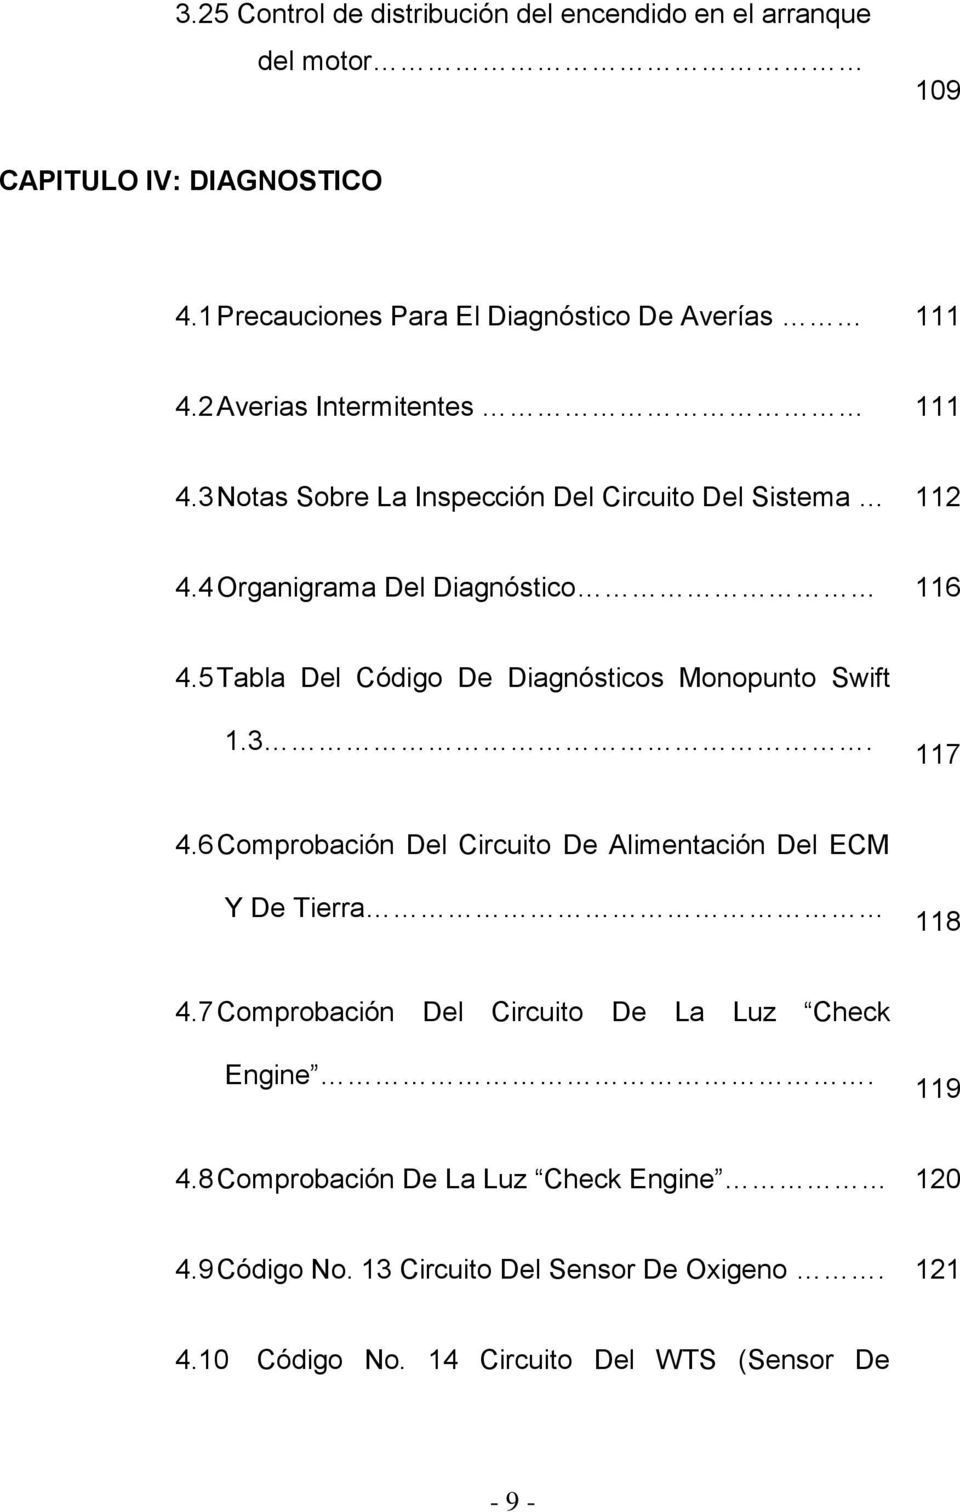 5 Tabla Del Código De Diagnósticos Monopunto Swift 1.3. 117 4.6 Comprobación Del Circuito De Alimentación Del ECM Y De Tierra 118 4.